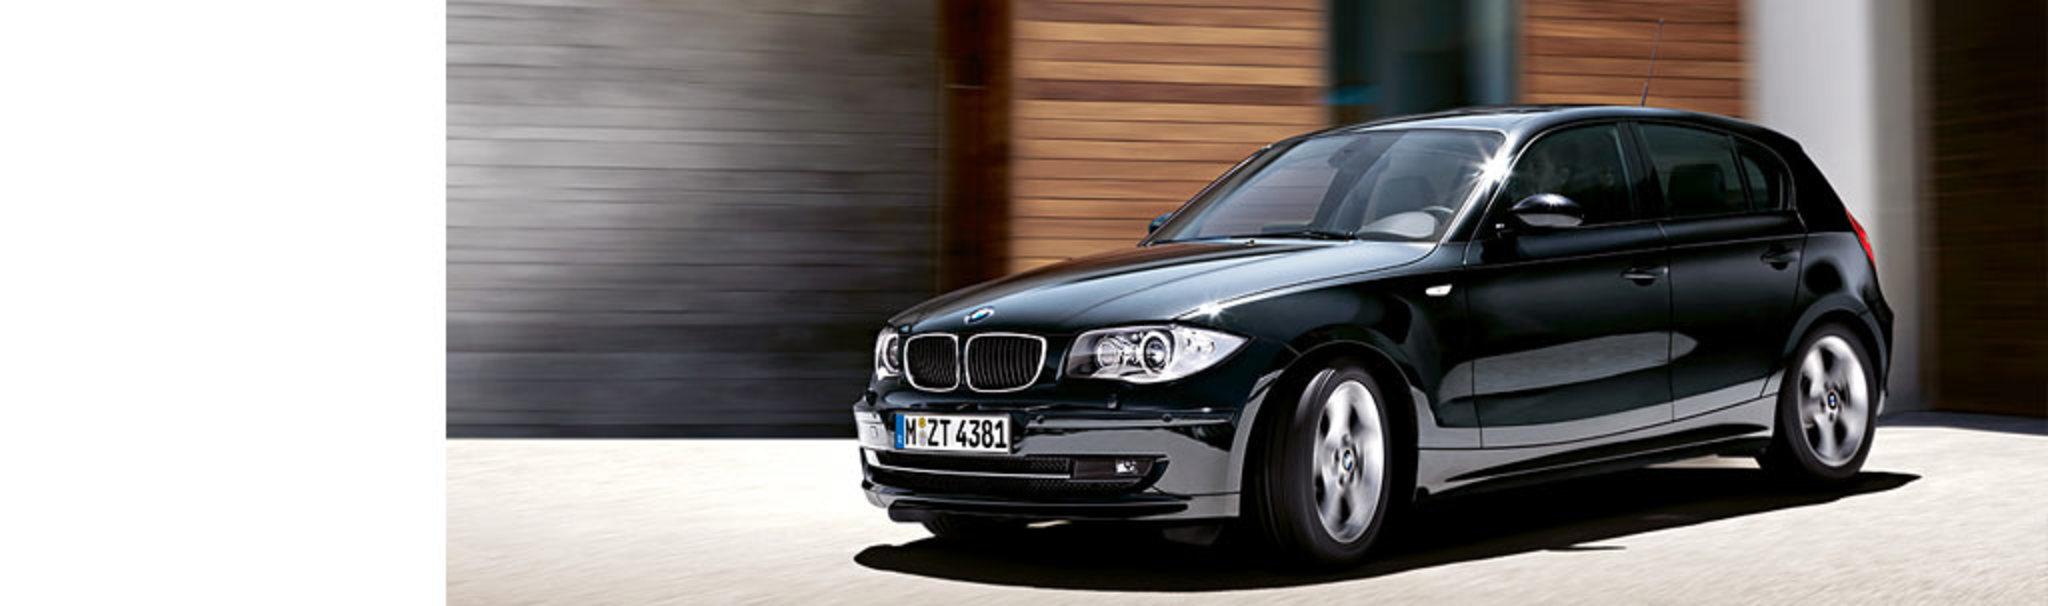 BMW 116d (5-door). 118 g/km CO2. Lightweight construction, energy management